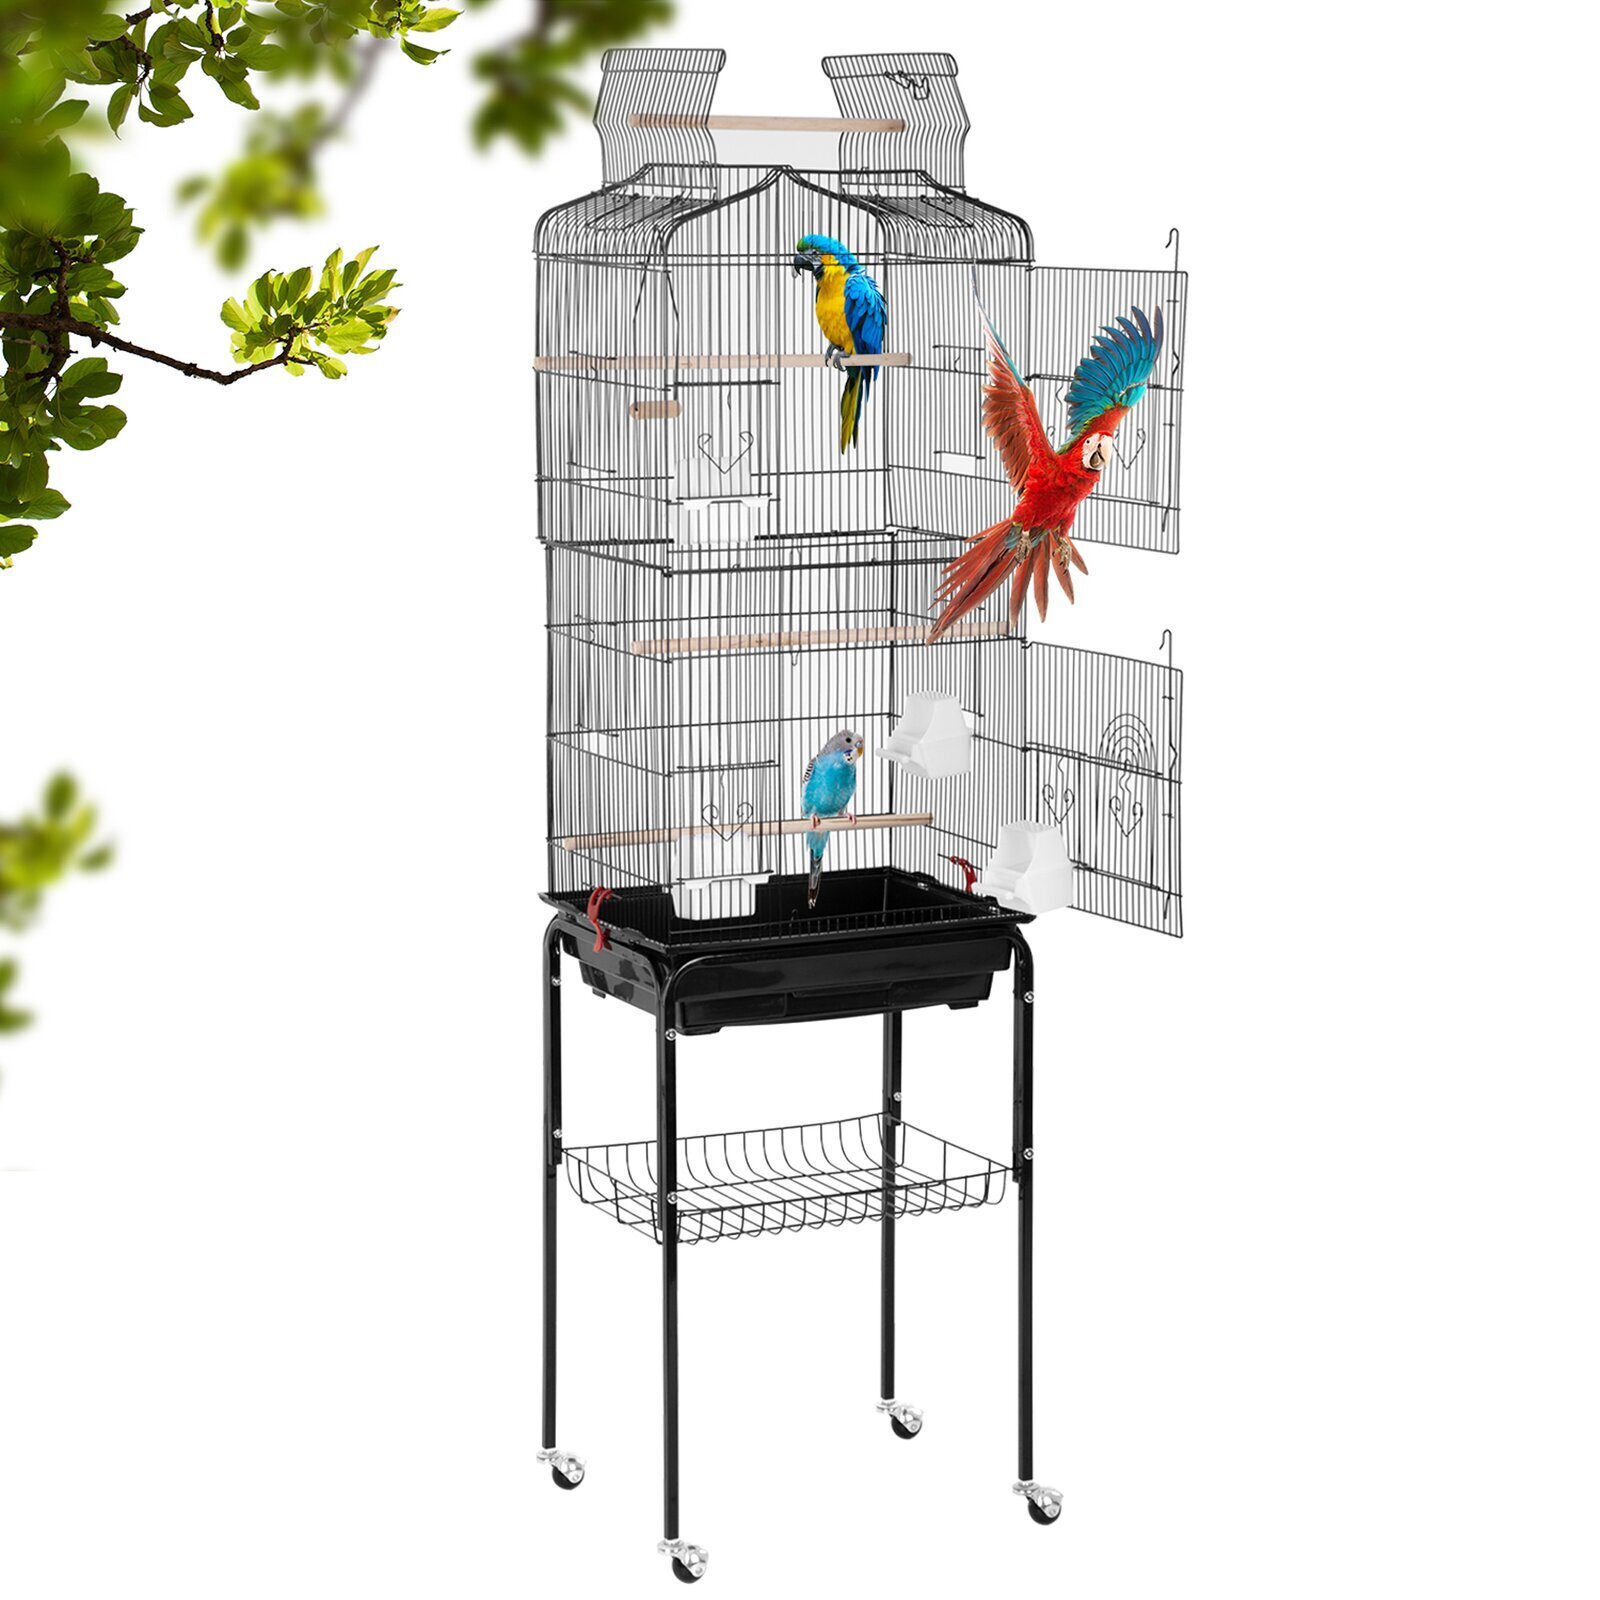 Vertical modern bird cage design